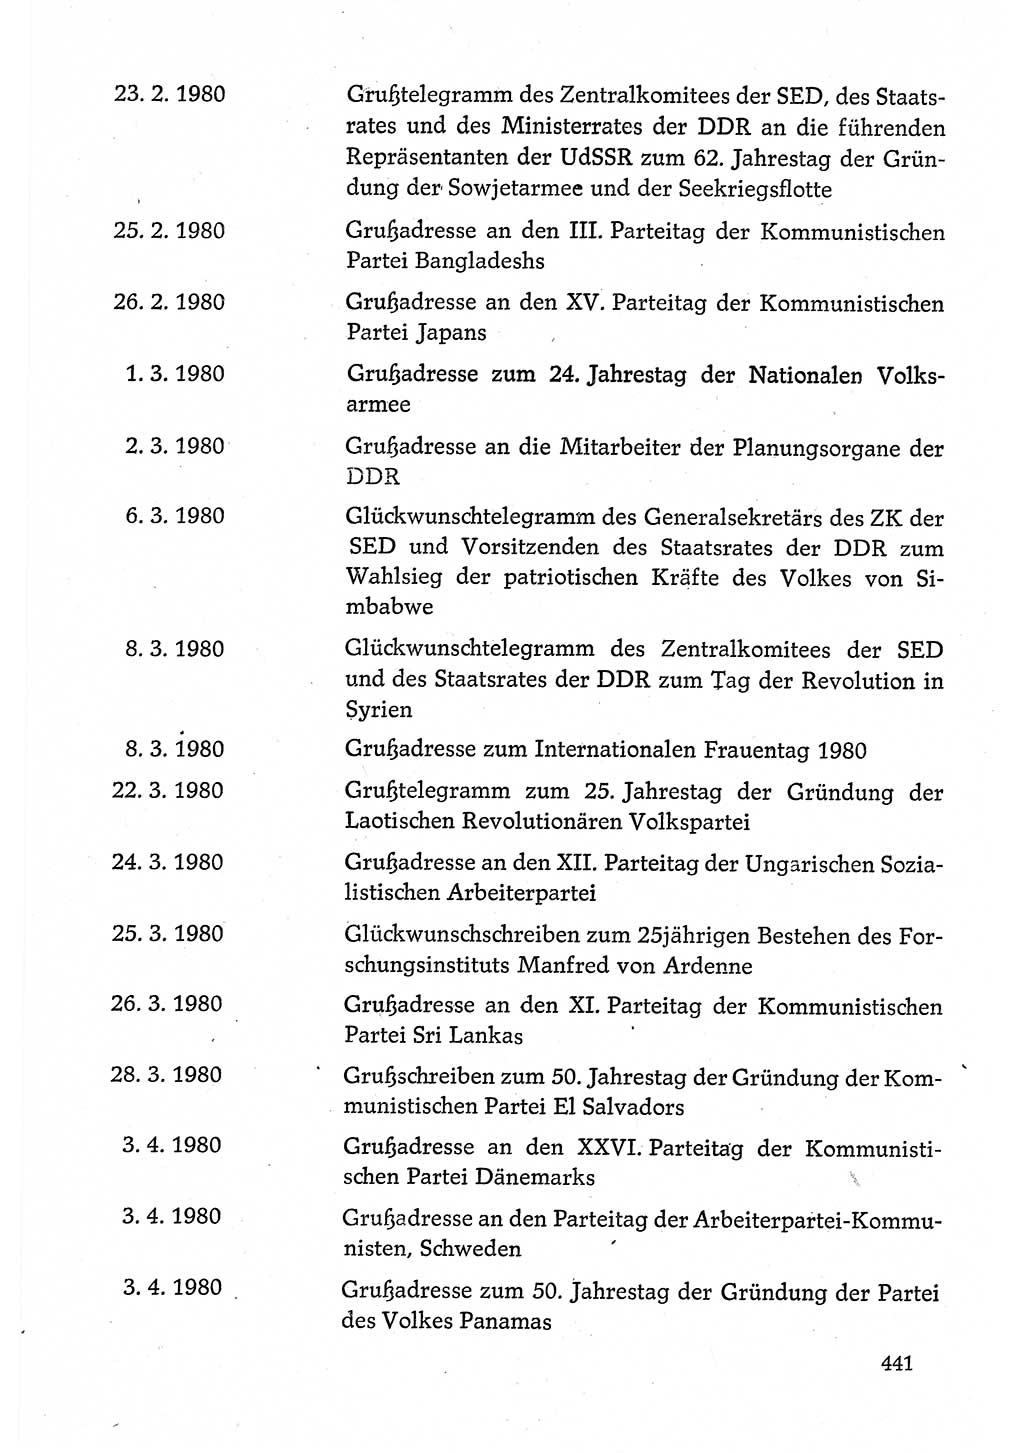 Dokumente der Sozialistischen Einheitspartei Deutschlands (SED) [Deutsche Demokratische Republik (DDR)] 1980-1981, Seite 441 (Dok. SED DDR 1980-1981, S. 441)